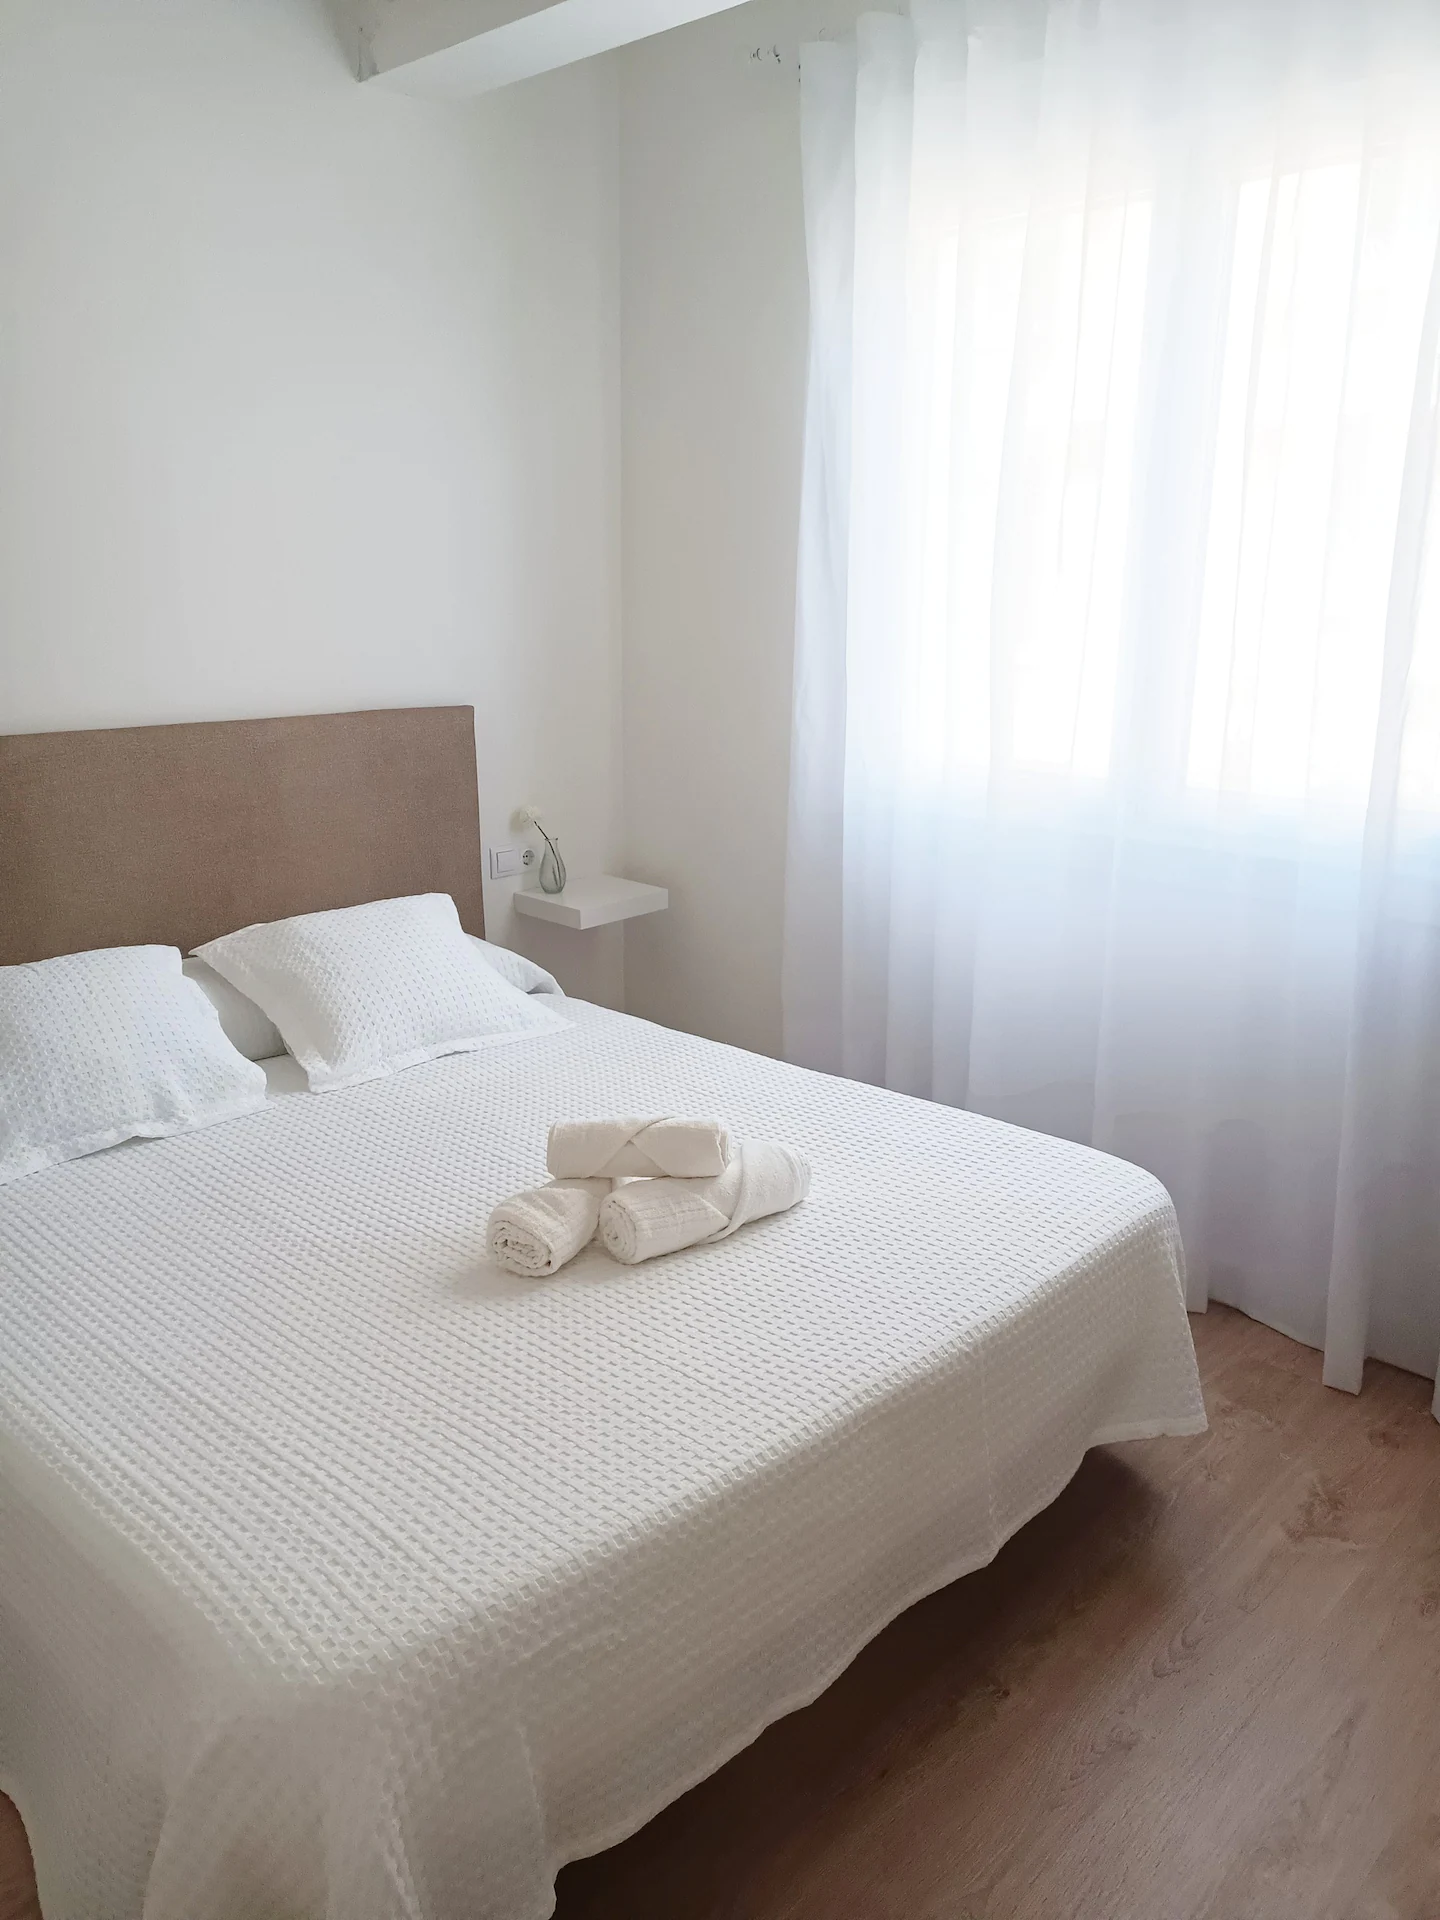 Ventana y cama del dormitorio de matrimonio, apartamento de alquiler para parejas en Cedeira